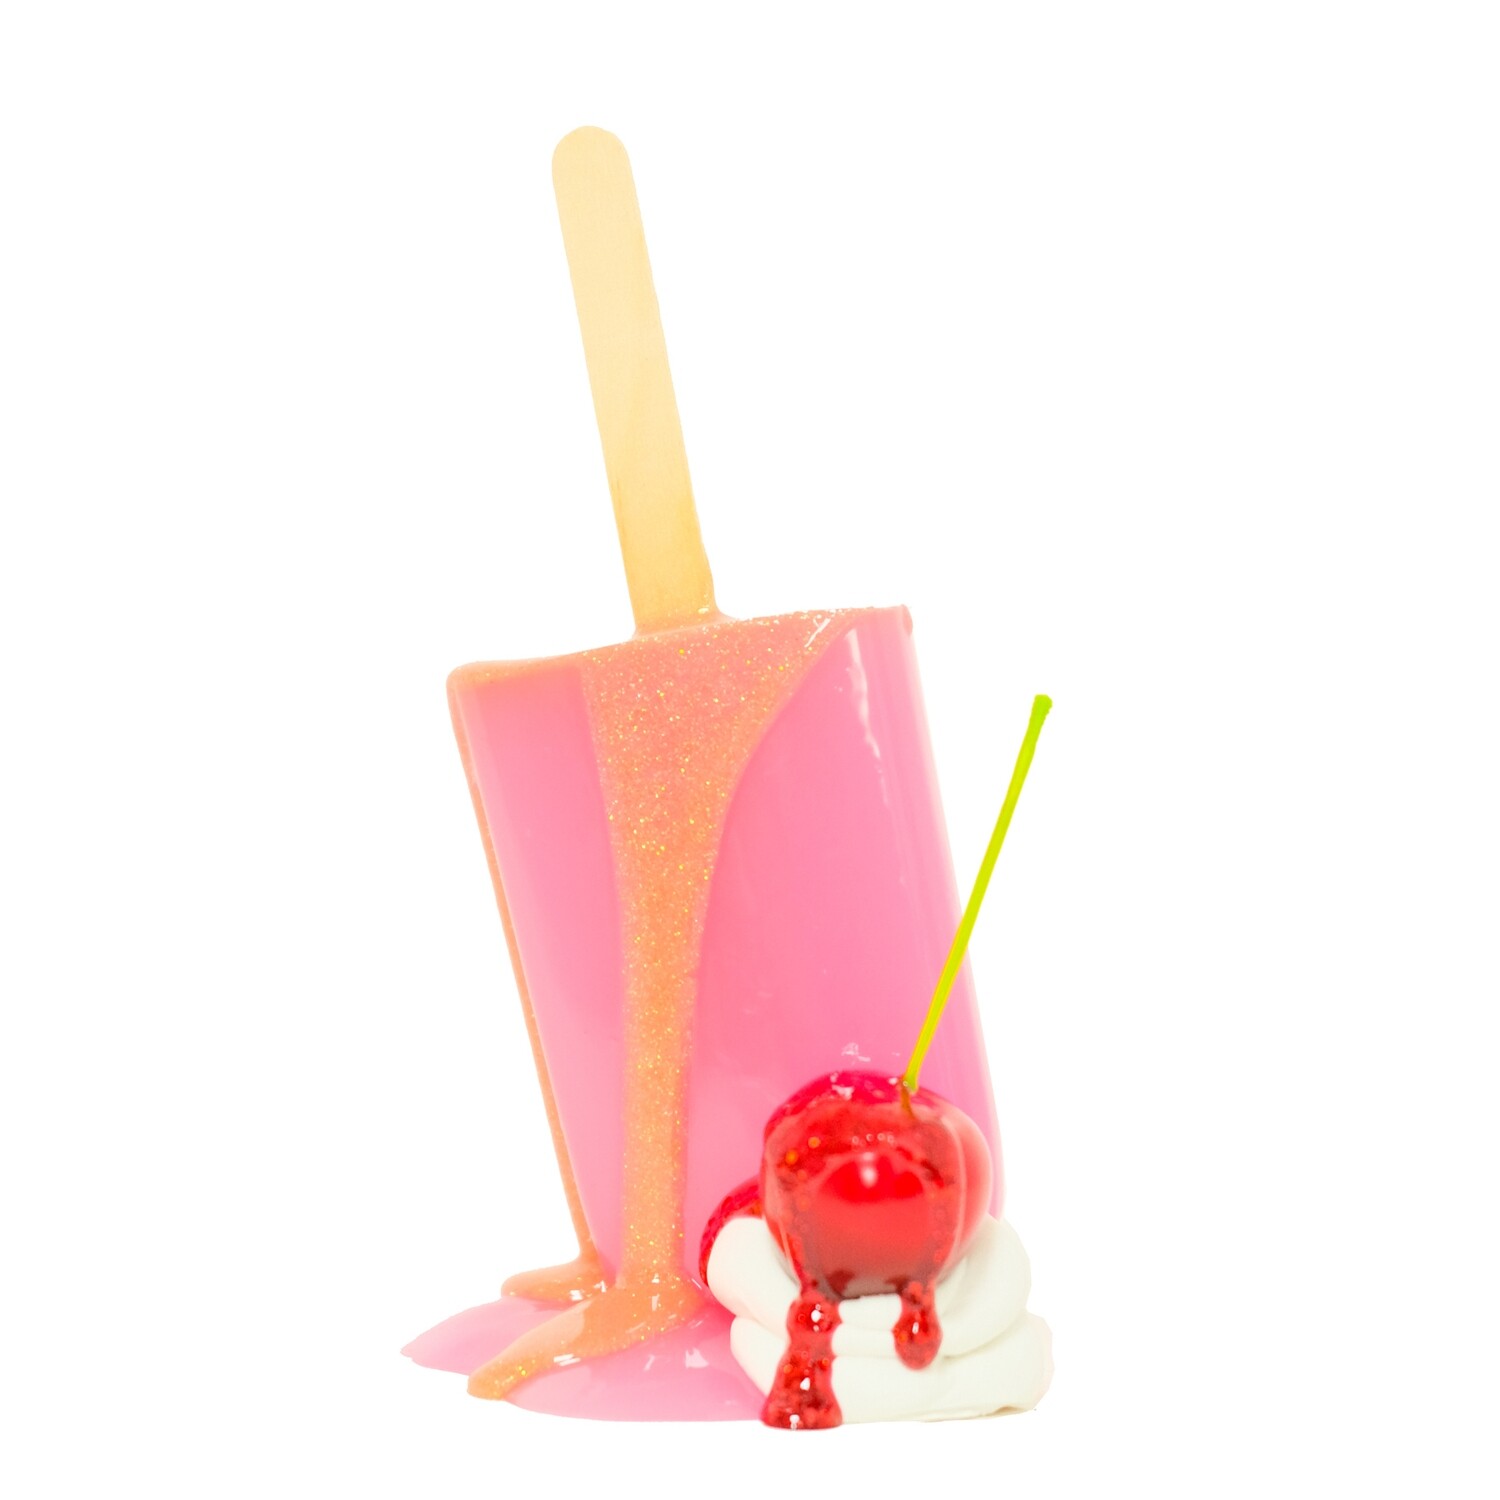 Melting Popsicle Art - 5 - Original Melting Pops